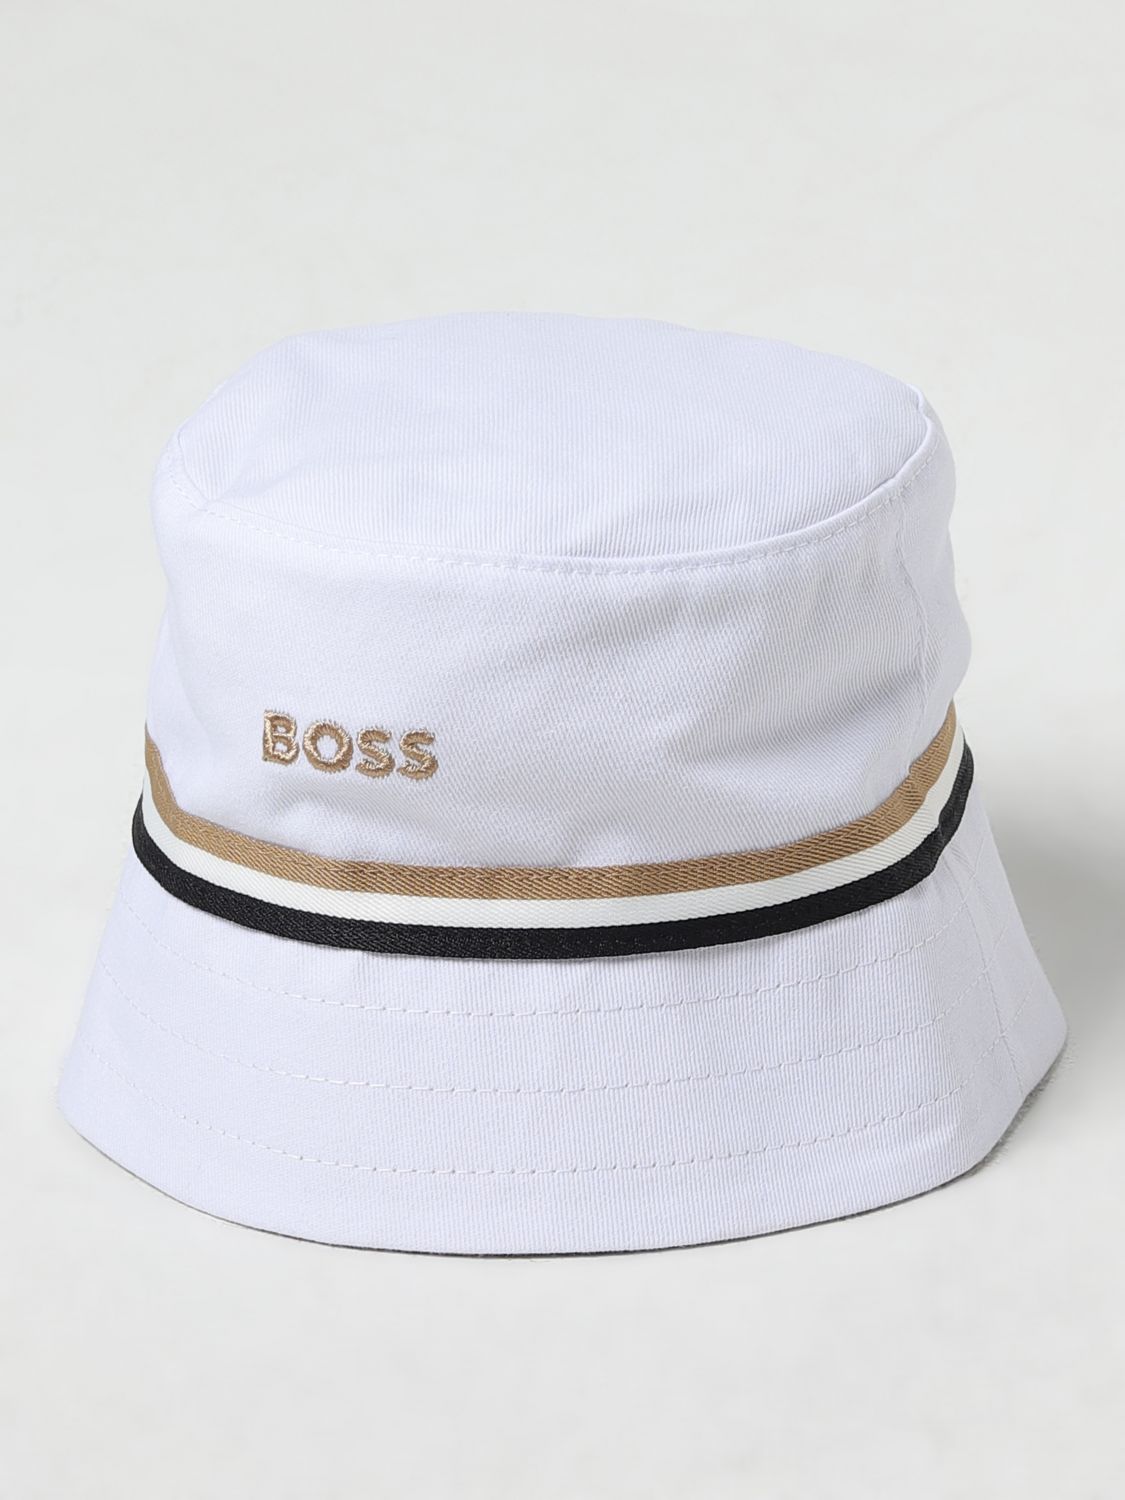 Bosswear Hat Boss Kidswear Kids Colour White